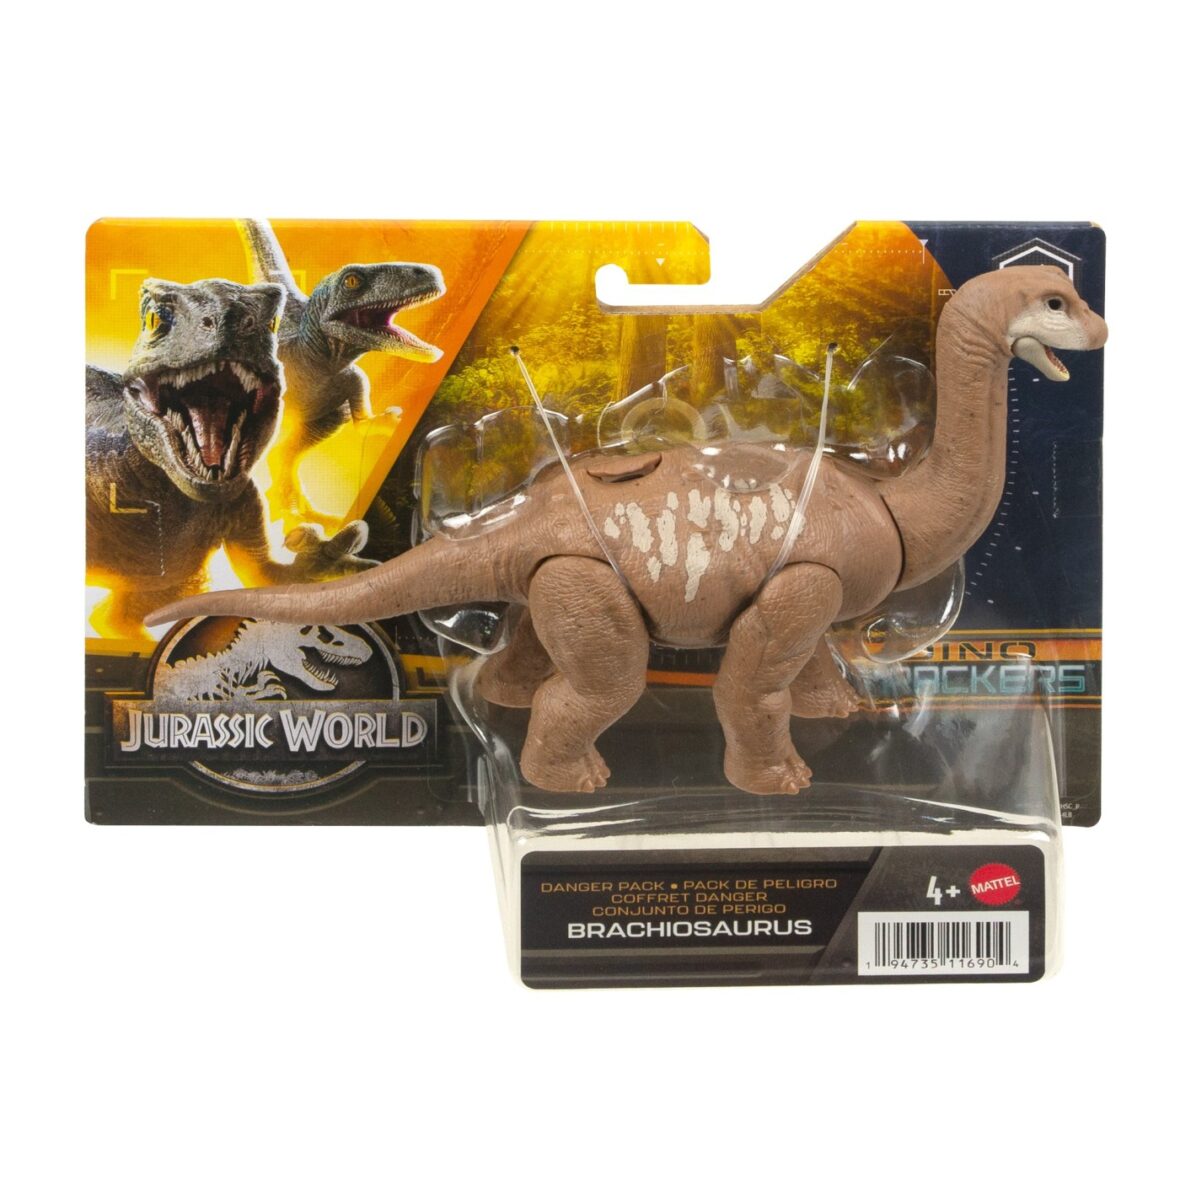 Jurassic World Dino Trackers Danger Pack Dinozaur Brachiosaurus